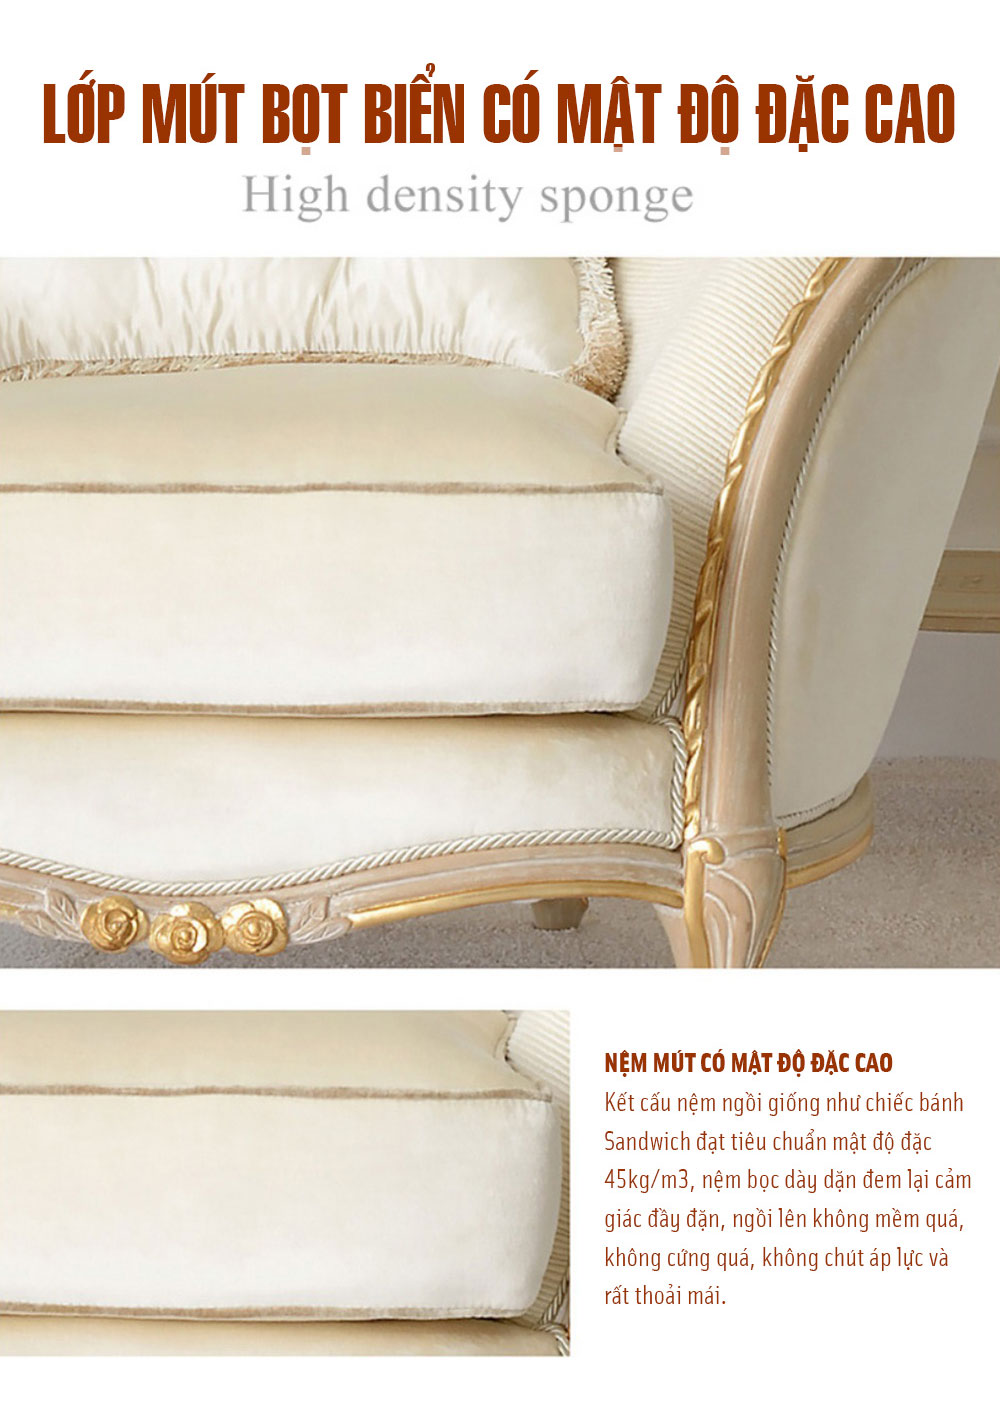 Bộ ghế sofa trắng trang nhã cho phòng khách tân cổ điển BT85